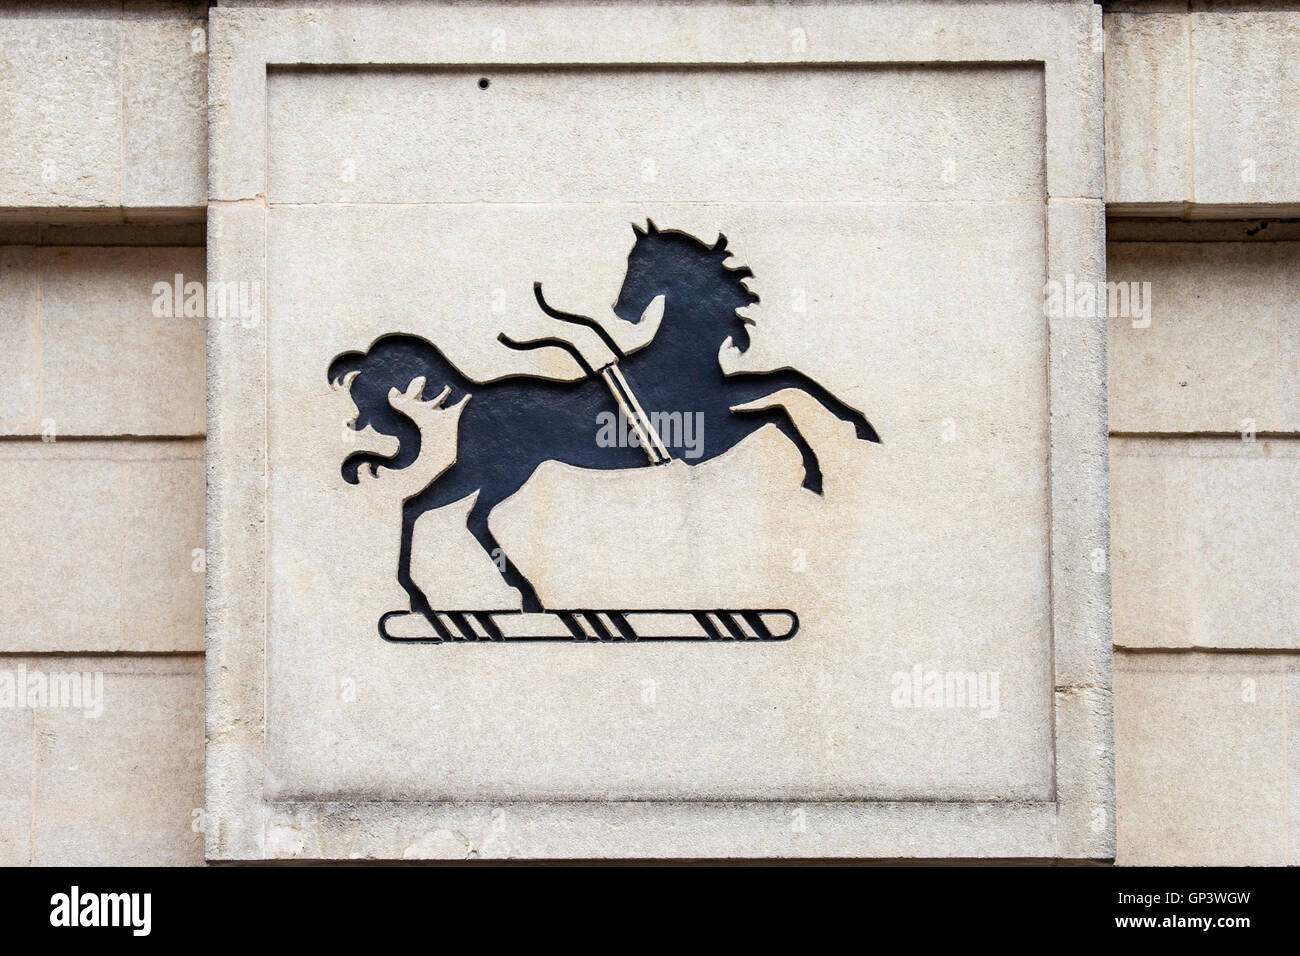 OXFORD, Vereinigtes Königreich - 12. August 2016: Ein Zeichen für eine Lloyds Bank-Filiale in der Stadt von Oxford in Großbritannien am 12. August 2016. Stockfoto